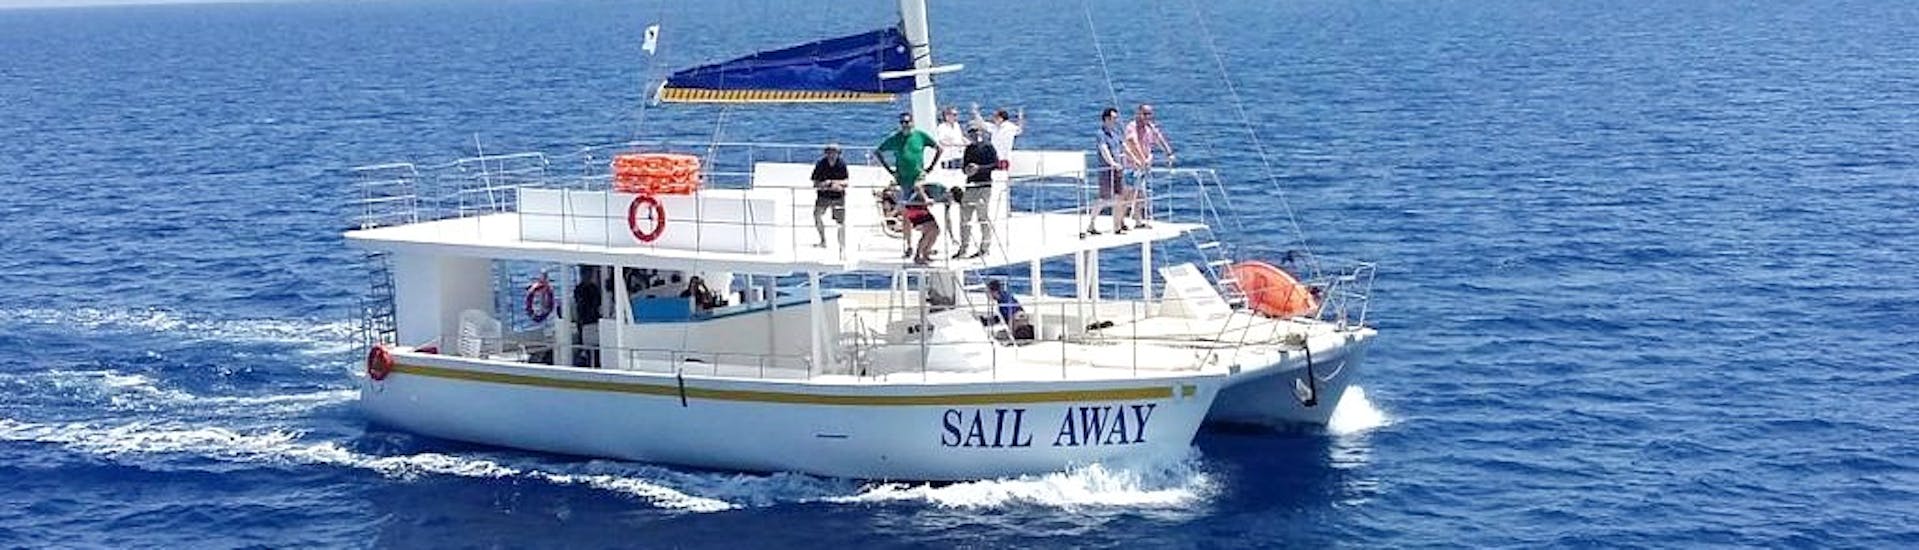 Foto van de Sail Away catamaran die door Relax-Cruises Limassol wordt gebruikt voor de tochten.